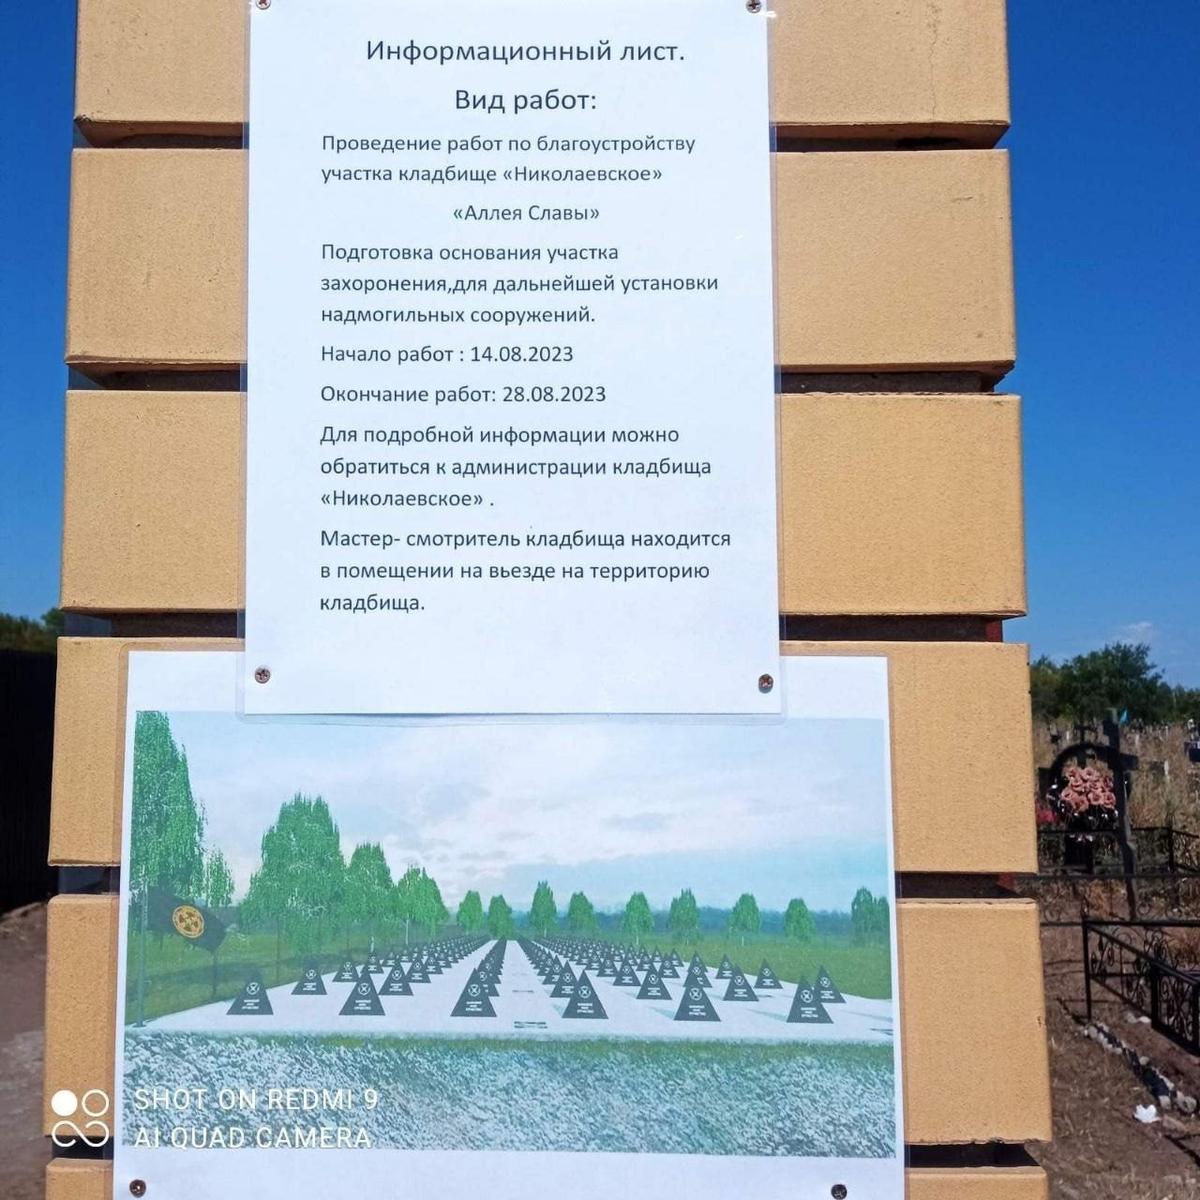 «Аллею славы» уже к концу августа обещают сделать похожей на знаменитое Арлингтонское кладбище. Вместо надгробий — пирамидки, напоминающие «зубы дракона», устанавливаемые на присоединенных территориях Украины как преграды для контрнаступления ВСУ. Фото: соцсети